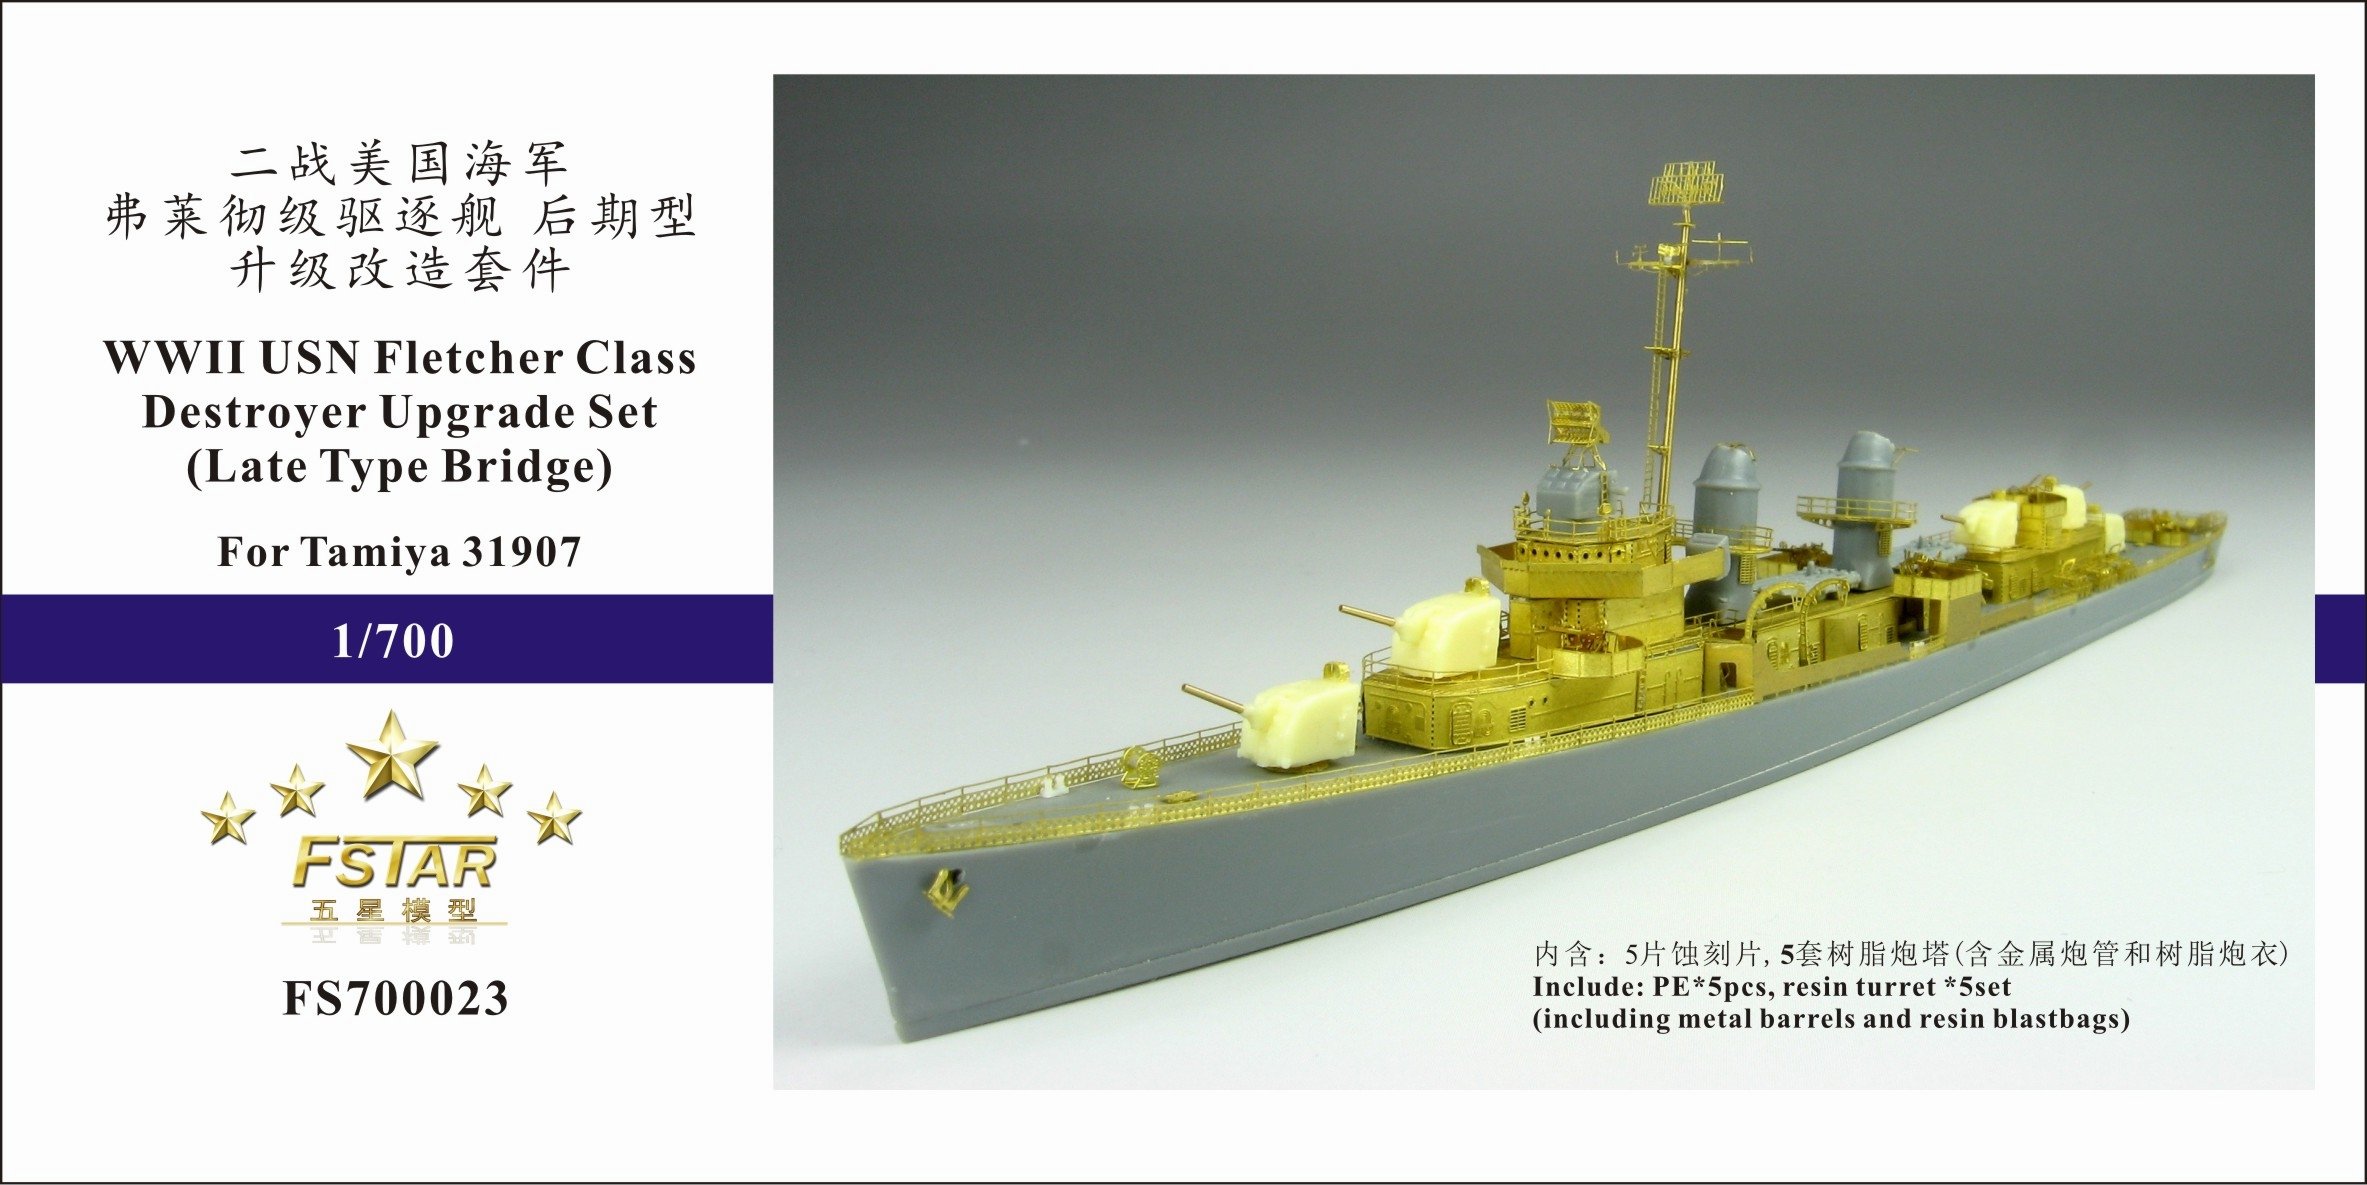 1/700 二战美国海军弗莱彻级驱逐舰(后期型舰桥)升级改造套件(配田宫31907)